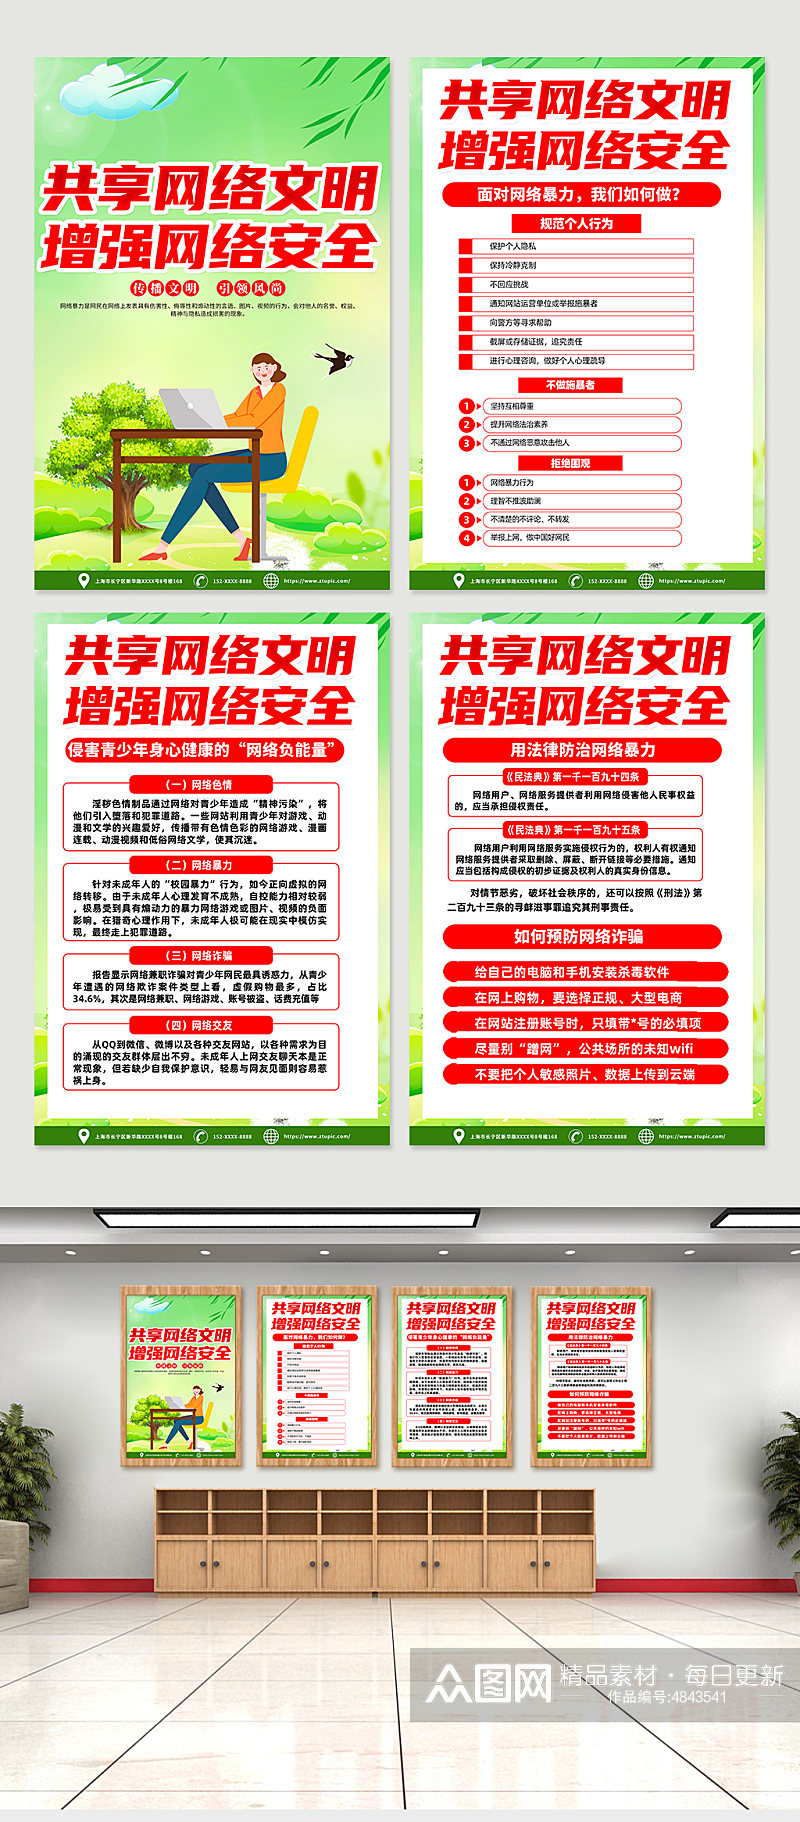 红色喜庆杜绝网络暴力宣传海报设计素材